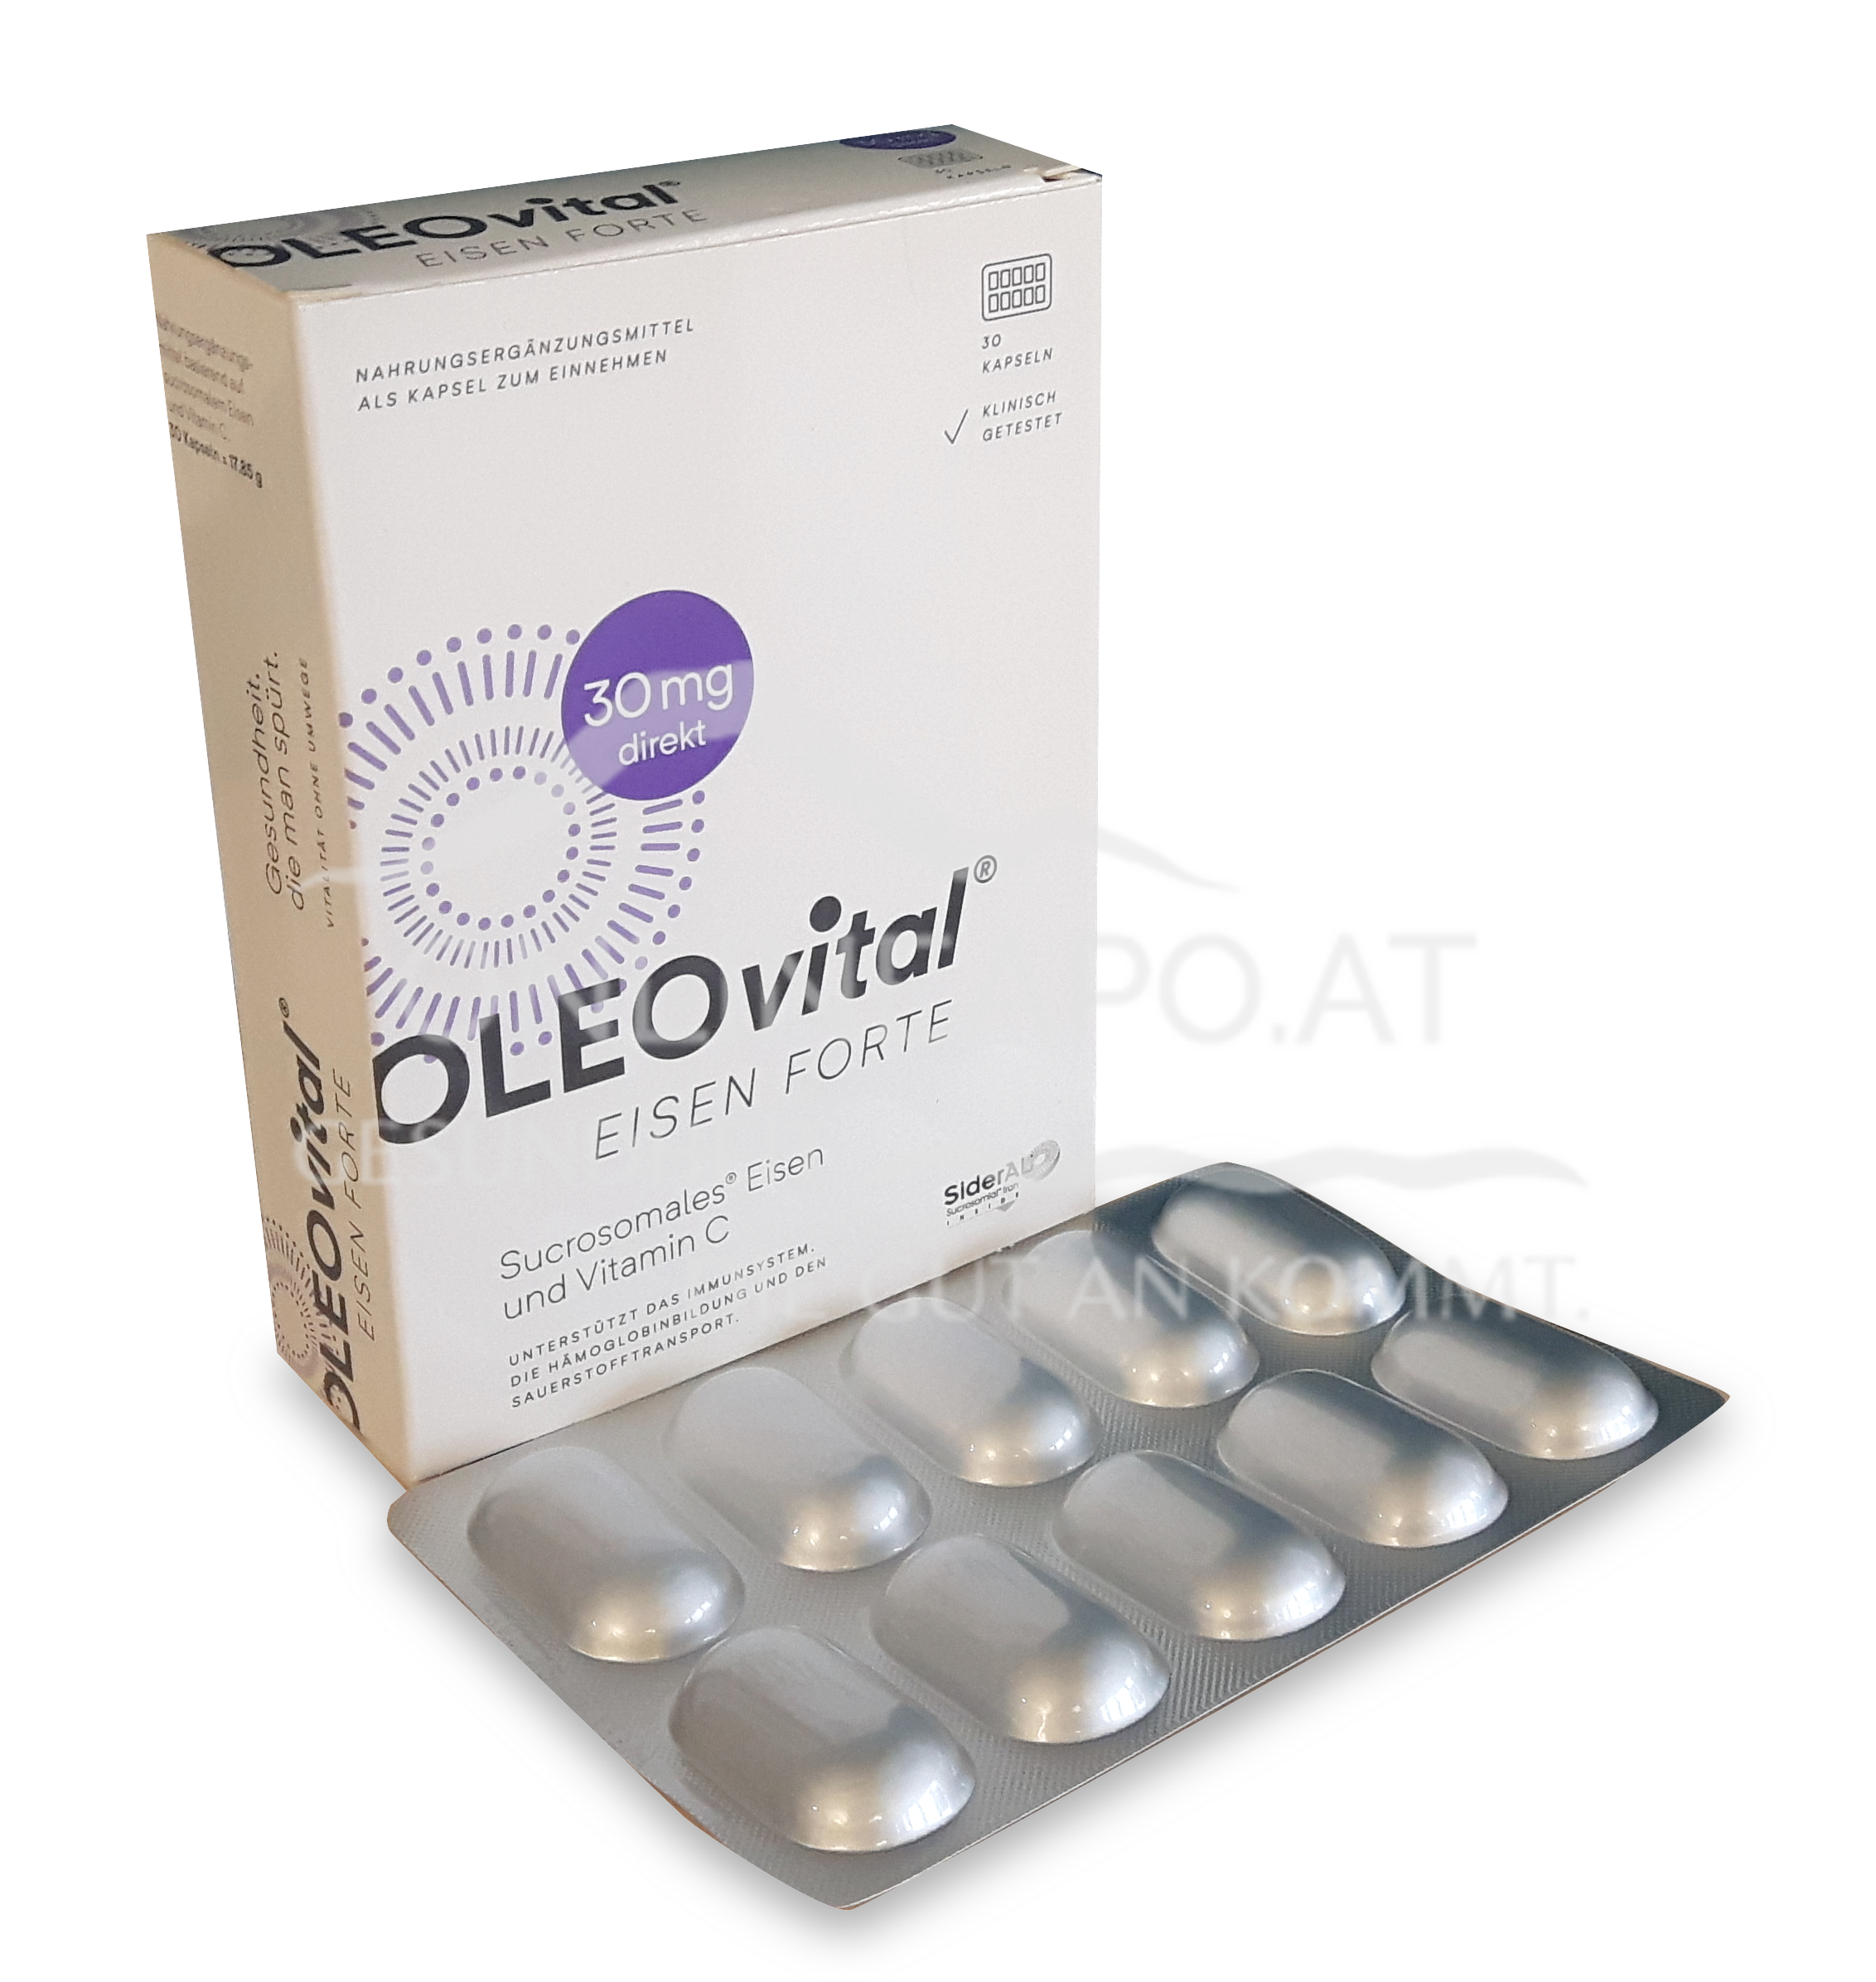 OLEOvital® EISEN FORTE  (30 mg Eisen) Kapseln